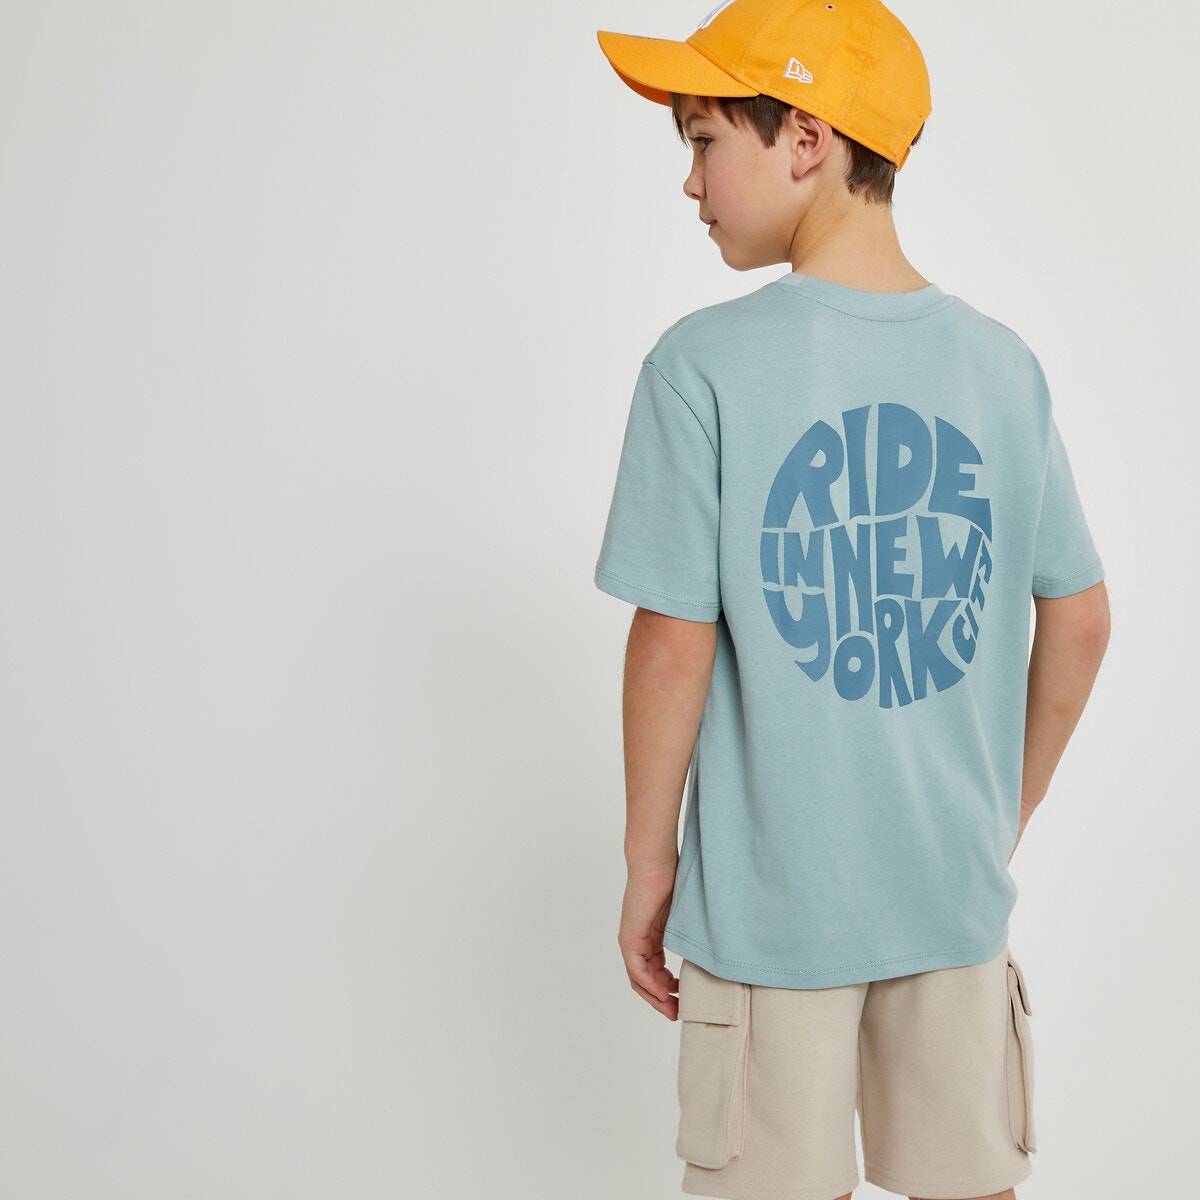 Μόδα > Παιδικά > Αγόρι > T-shirt, πόλο > Κοντά μανίκια Κοντομάνικο T-shirt oversize με στάμπα στην πλάτη